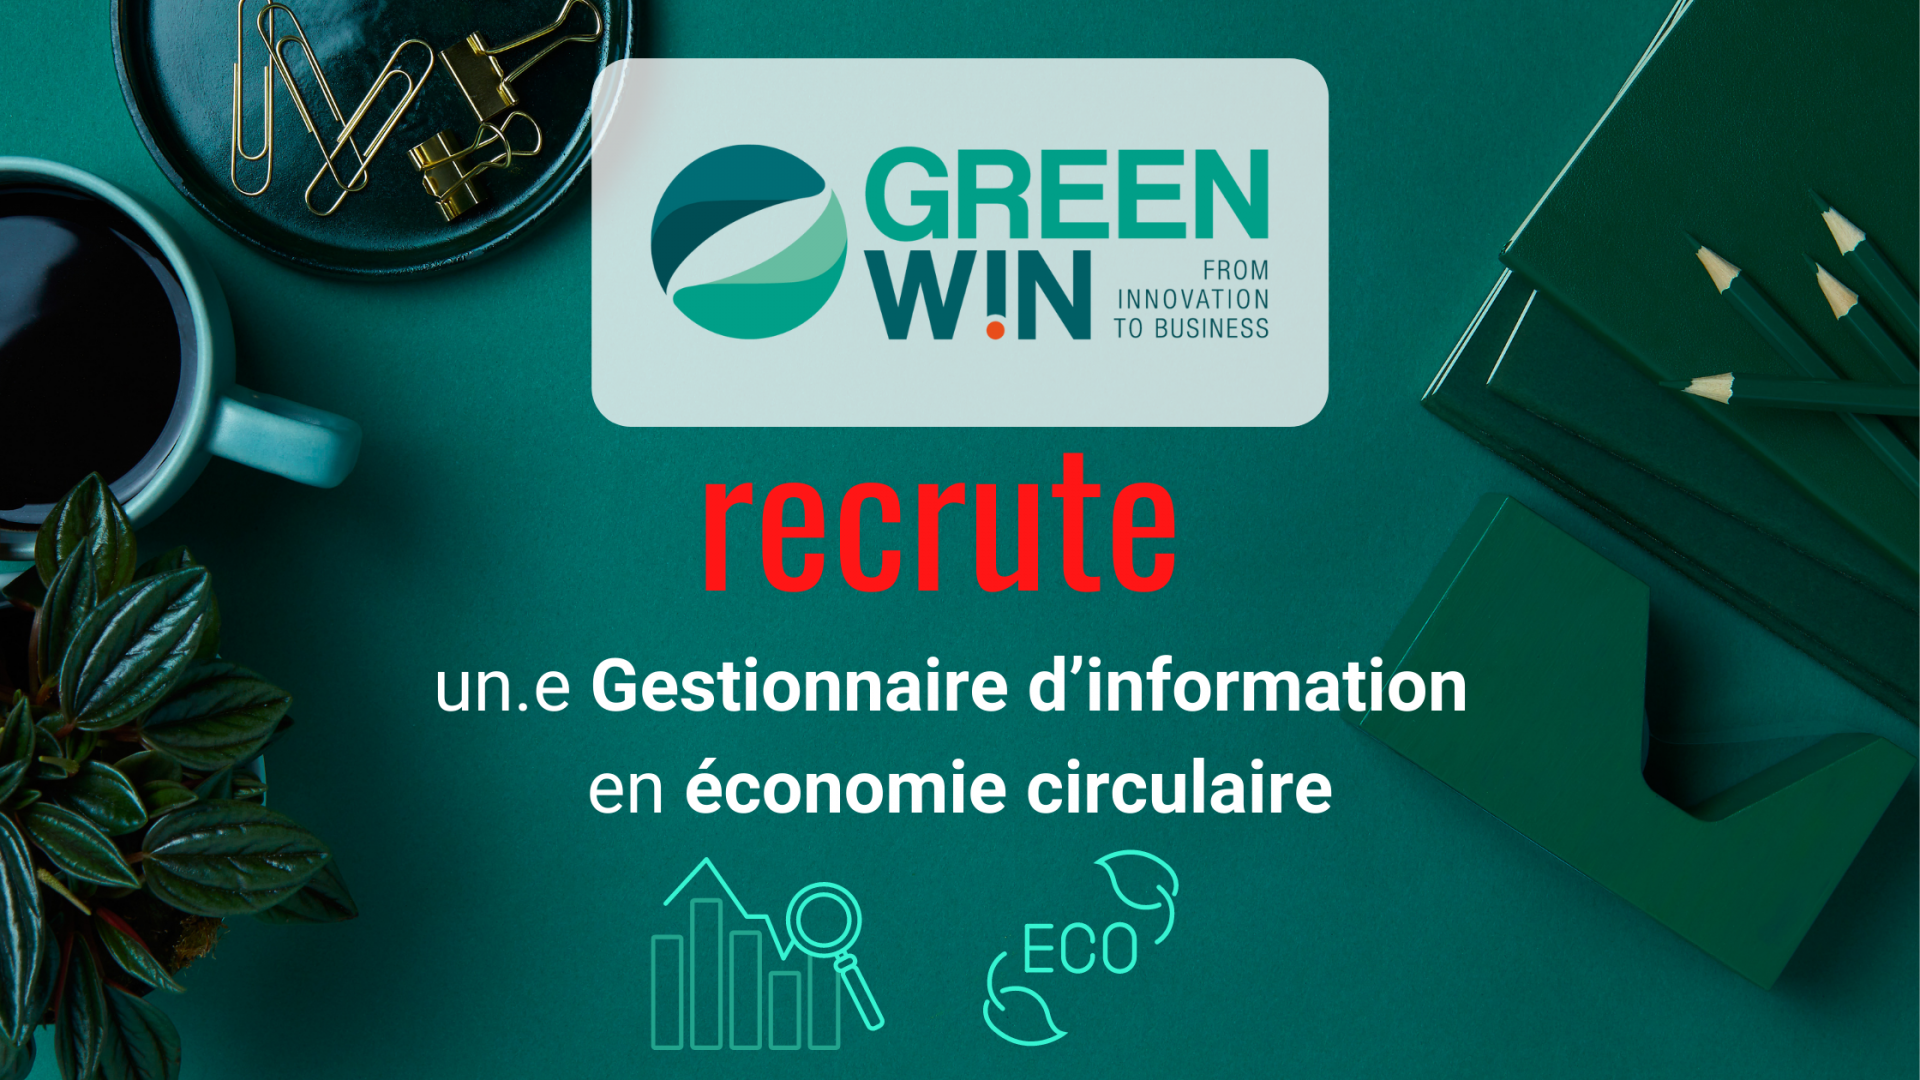 GreenWin recrute un.e Gestionnaire d’information en économie circulaire